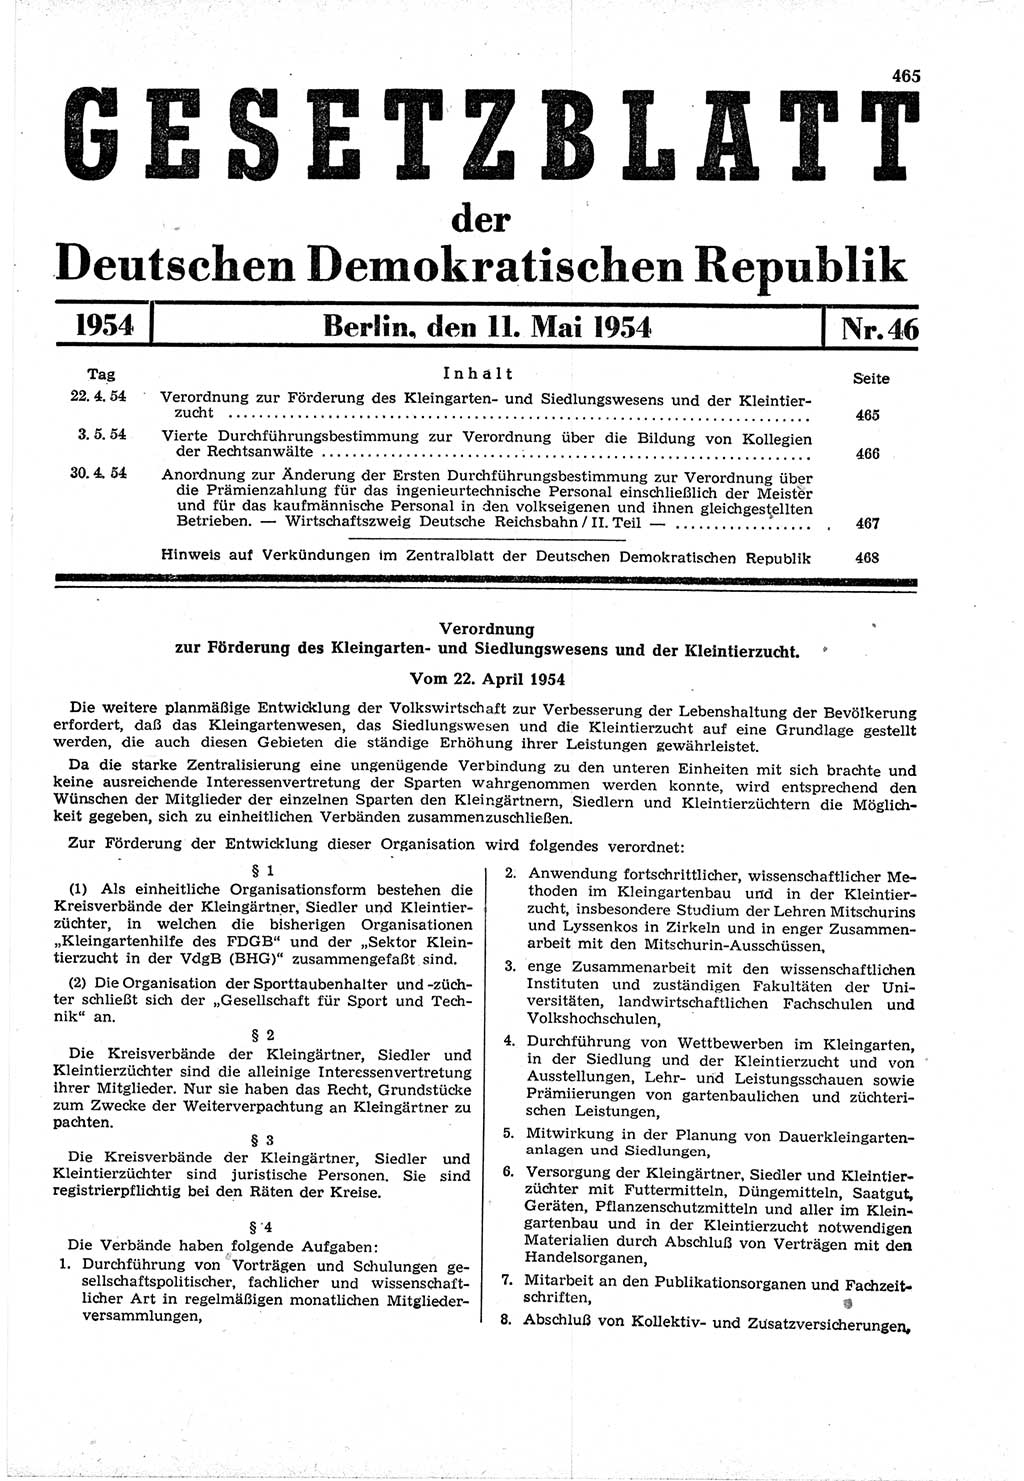 Gesetzblatt (GBl.) der Deutschen Demokratischen Republik (DDR) 1954, Seite 465 (GBl. DDR 1954, S. 465)